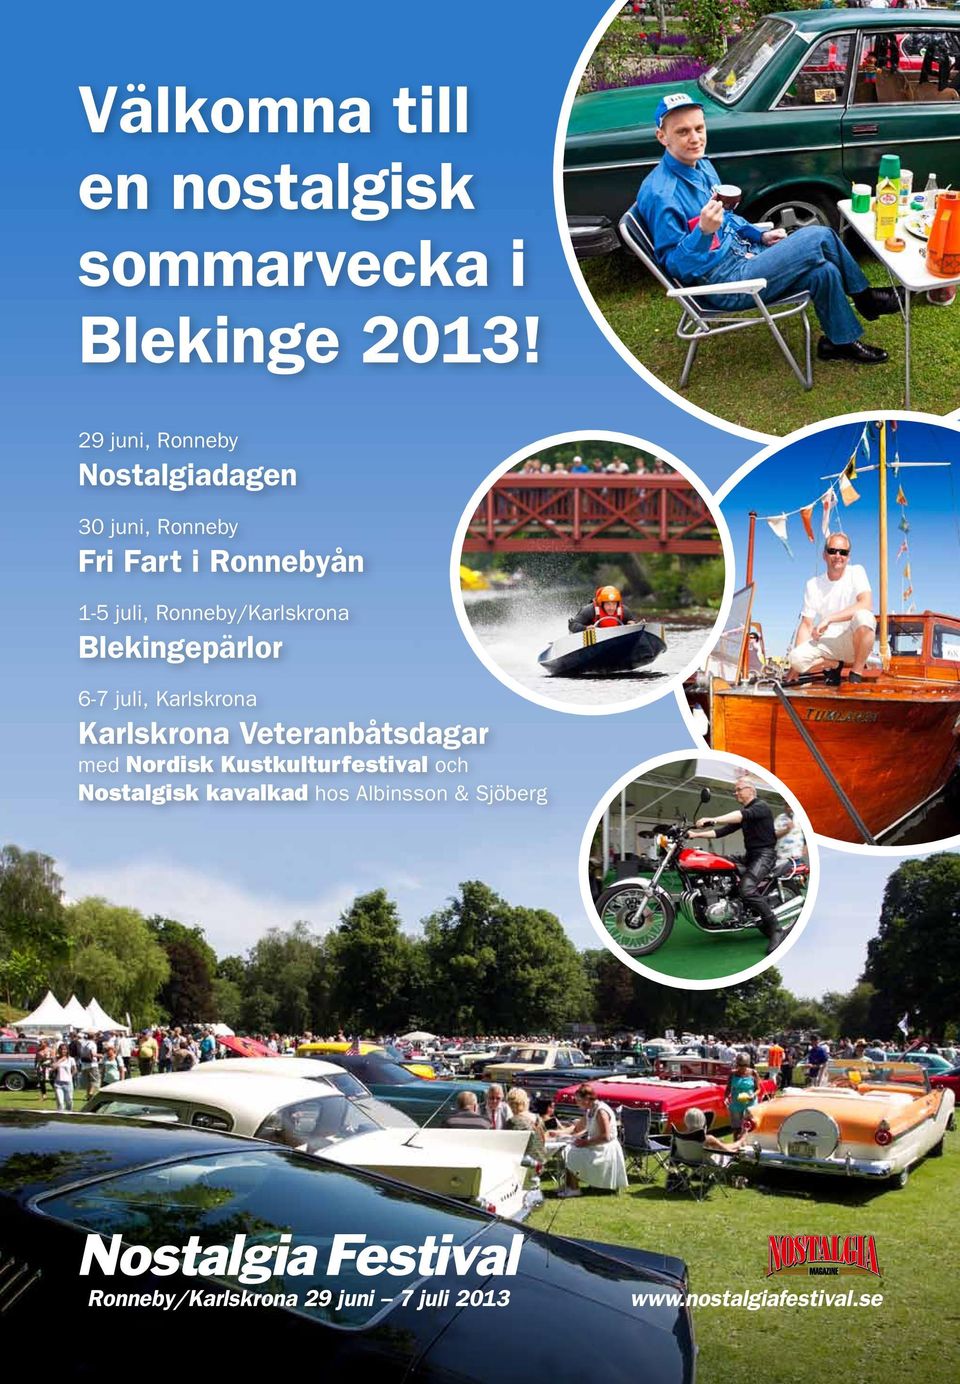 Ronneby/Karlskrona Blekingepärlor 6-7 juli, Karlskrona Karlskrona Veteranbåtsdagar med